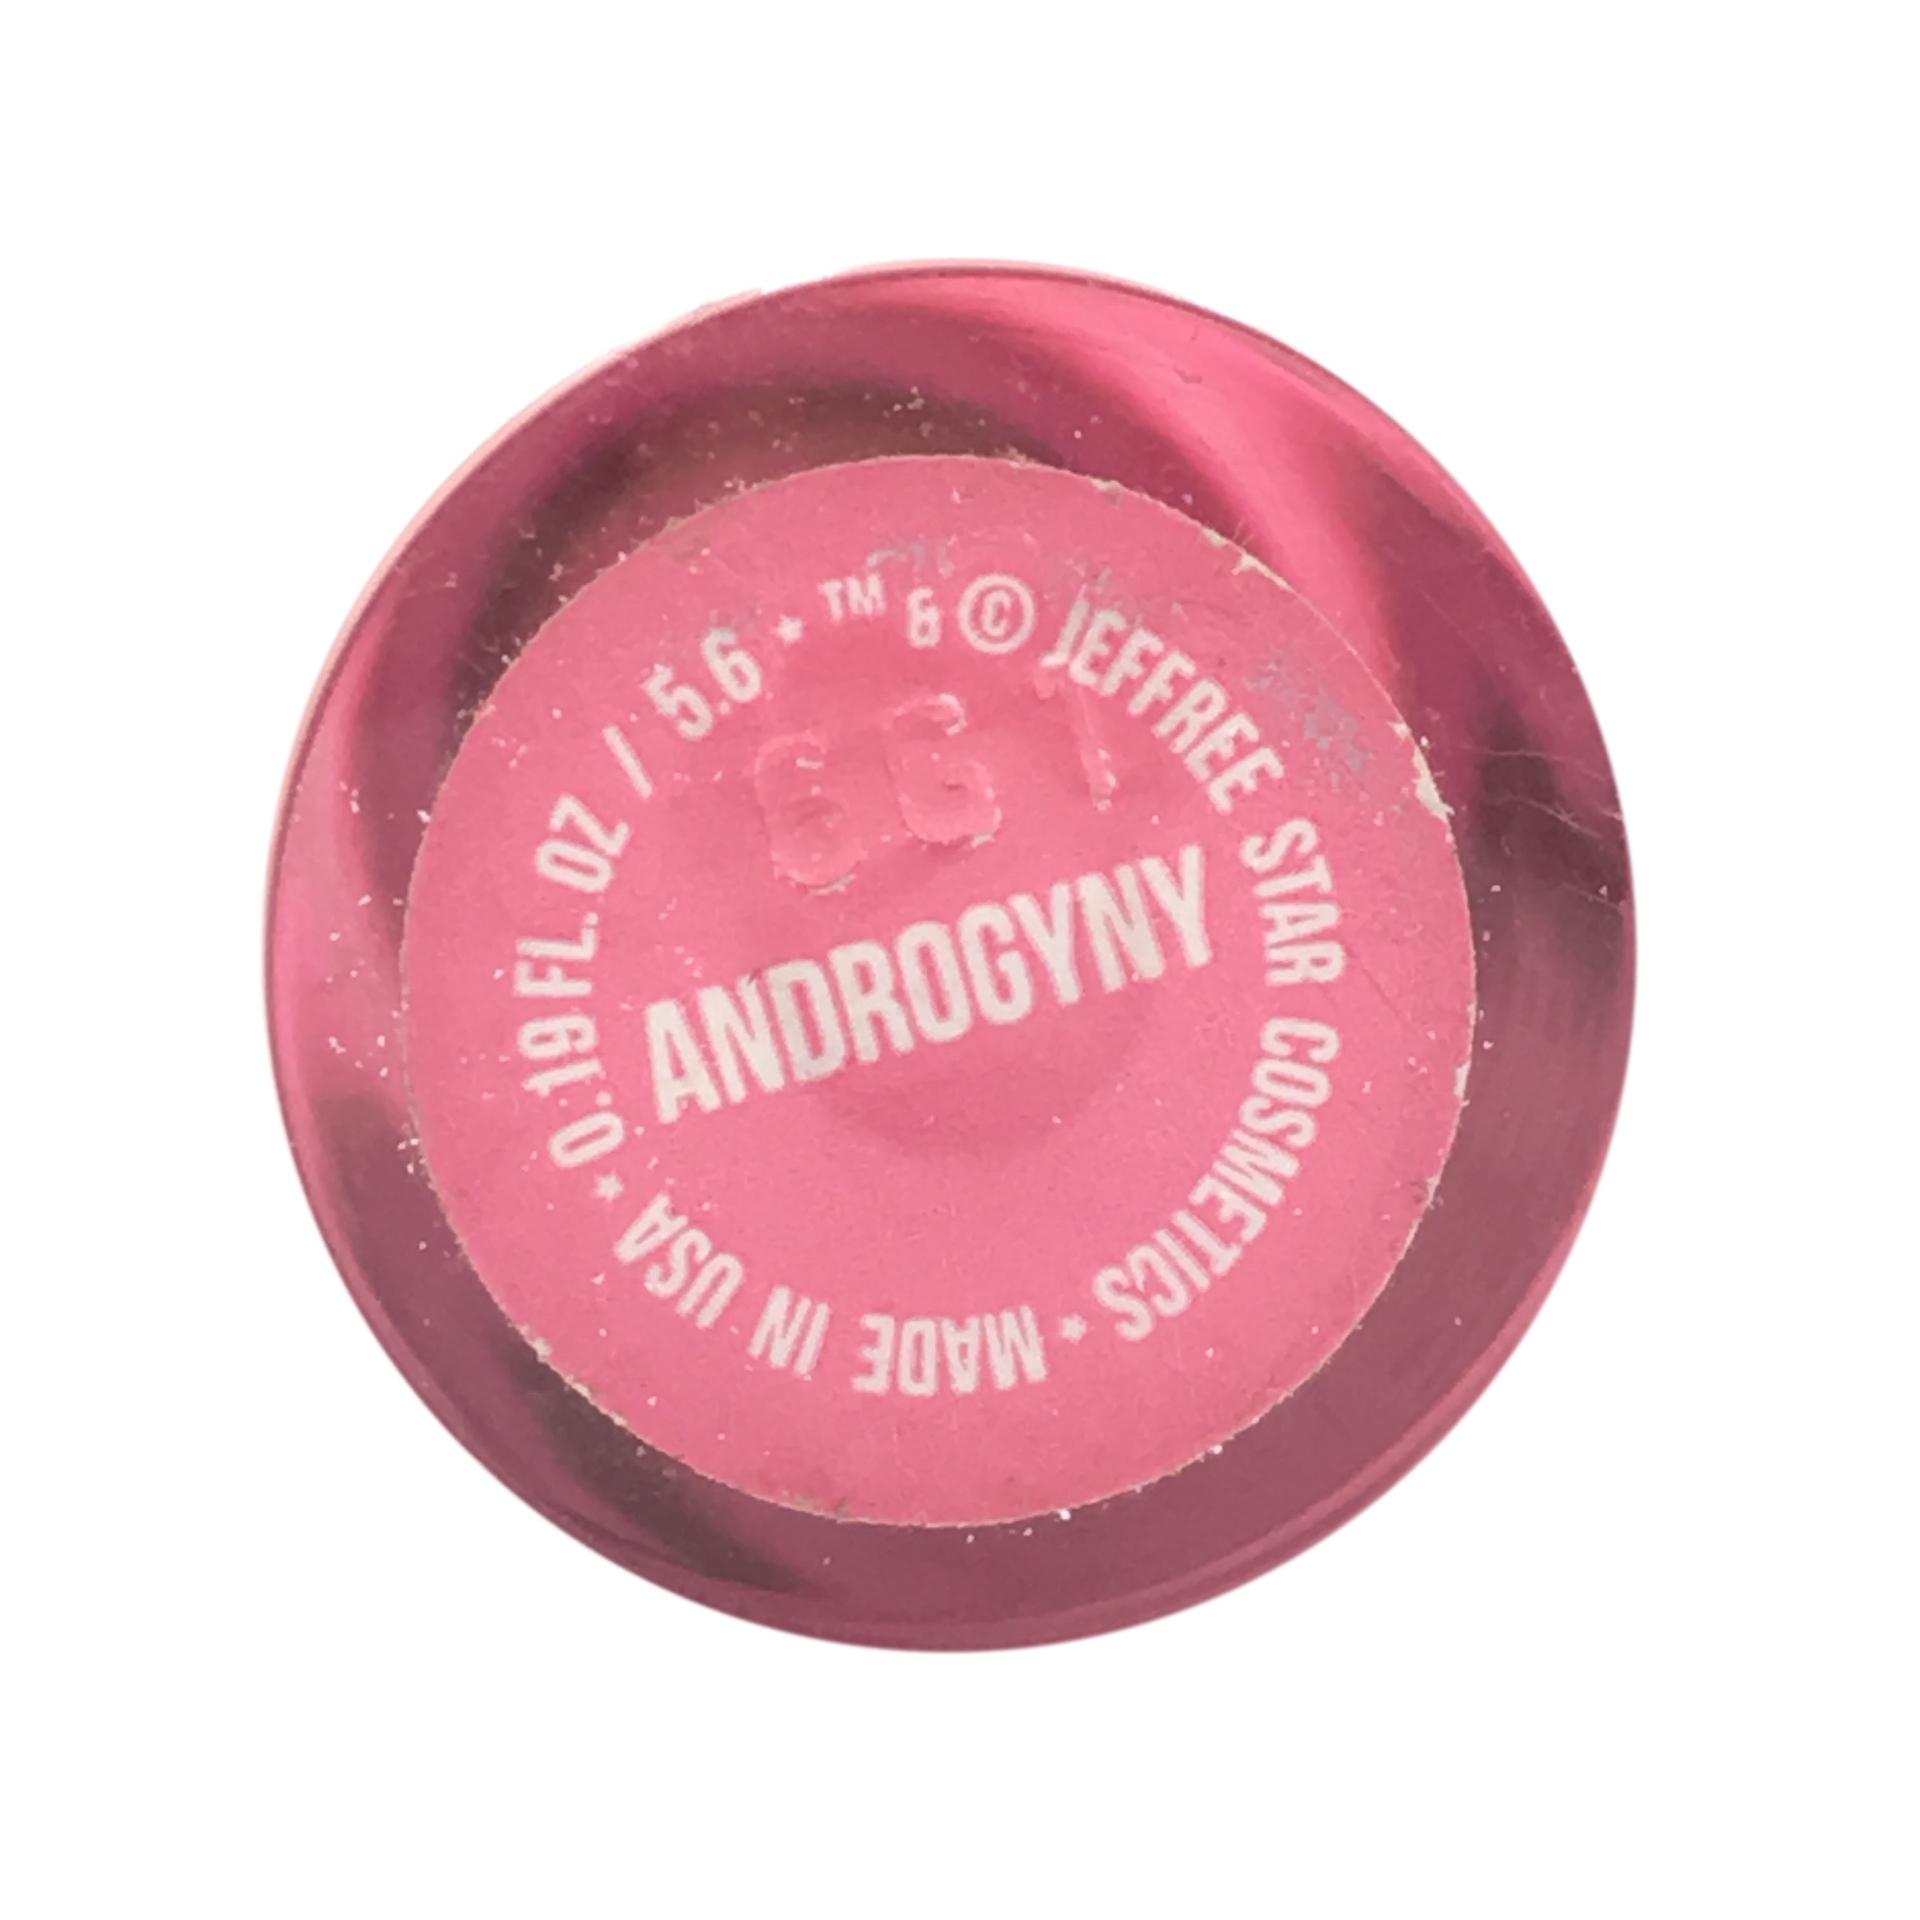 Jeffree Star Androgyny Lip